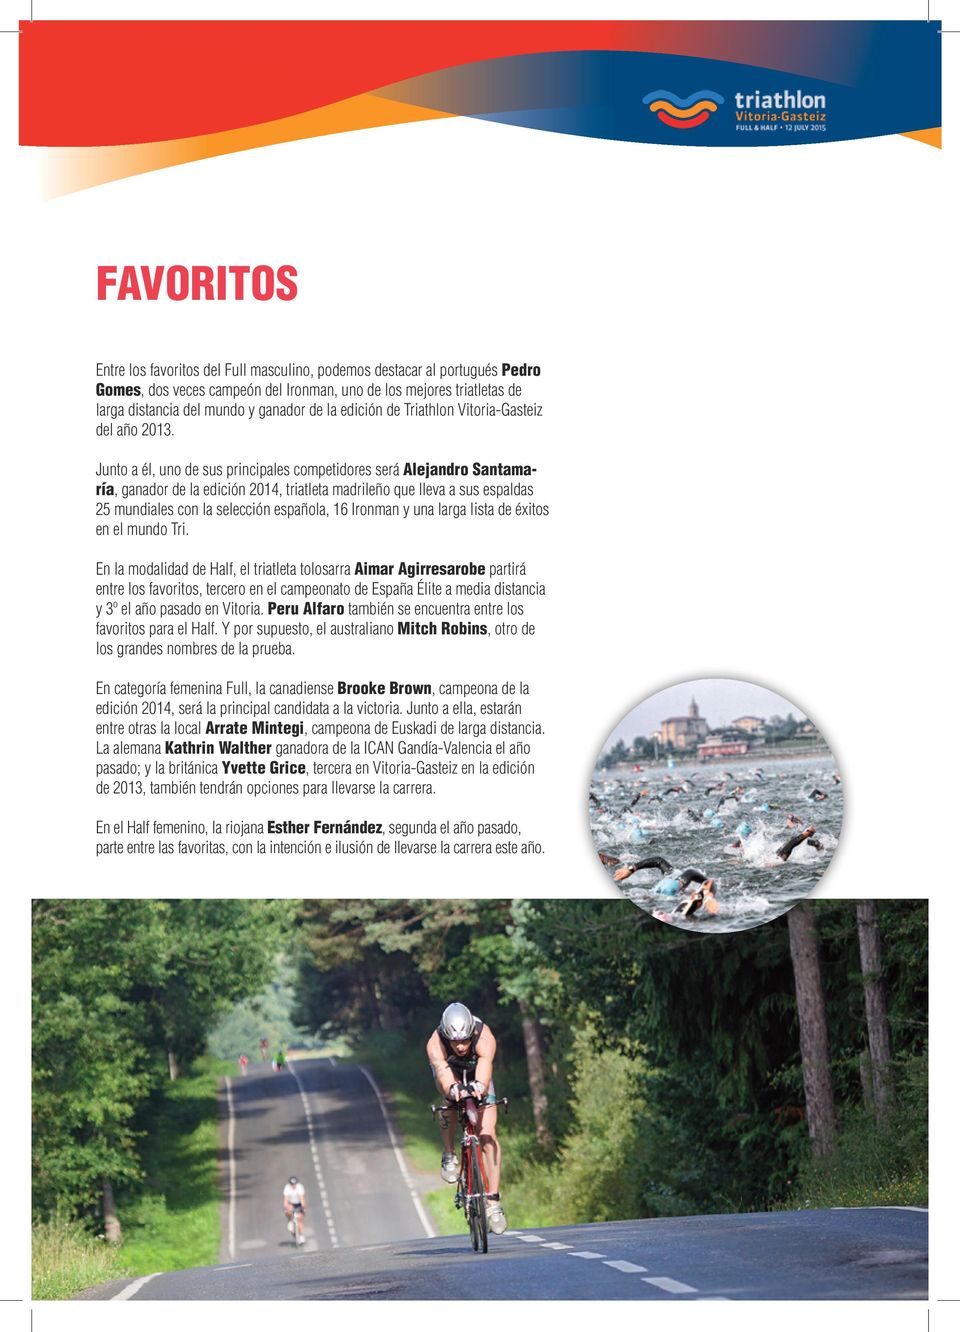 Junto a él, uno de sus principales competidores será Alejandro Santamaría, ganador de la edición 2014, triatleta madrileño que lleva a sus espaldas 25 mundiales con la selección española, 16 Ironman